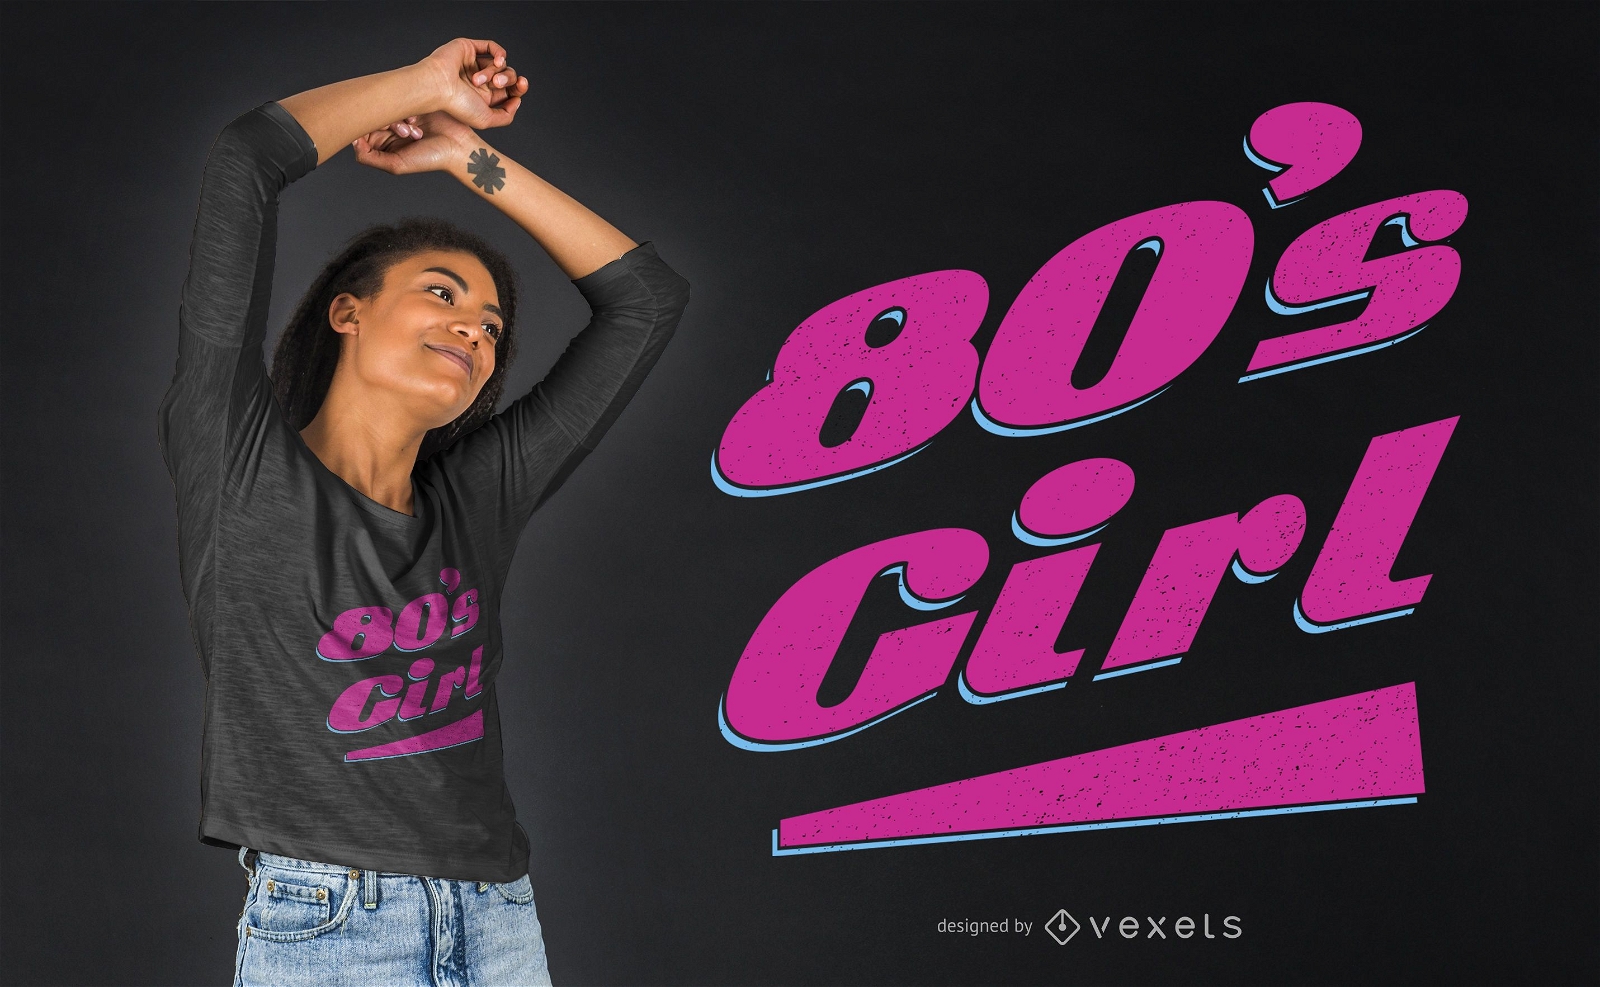 80's Girl T-shirt Design 